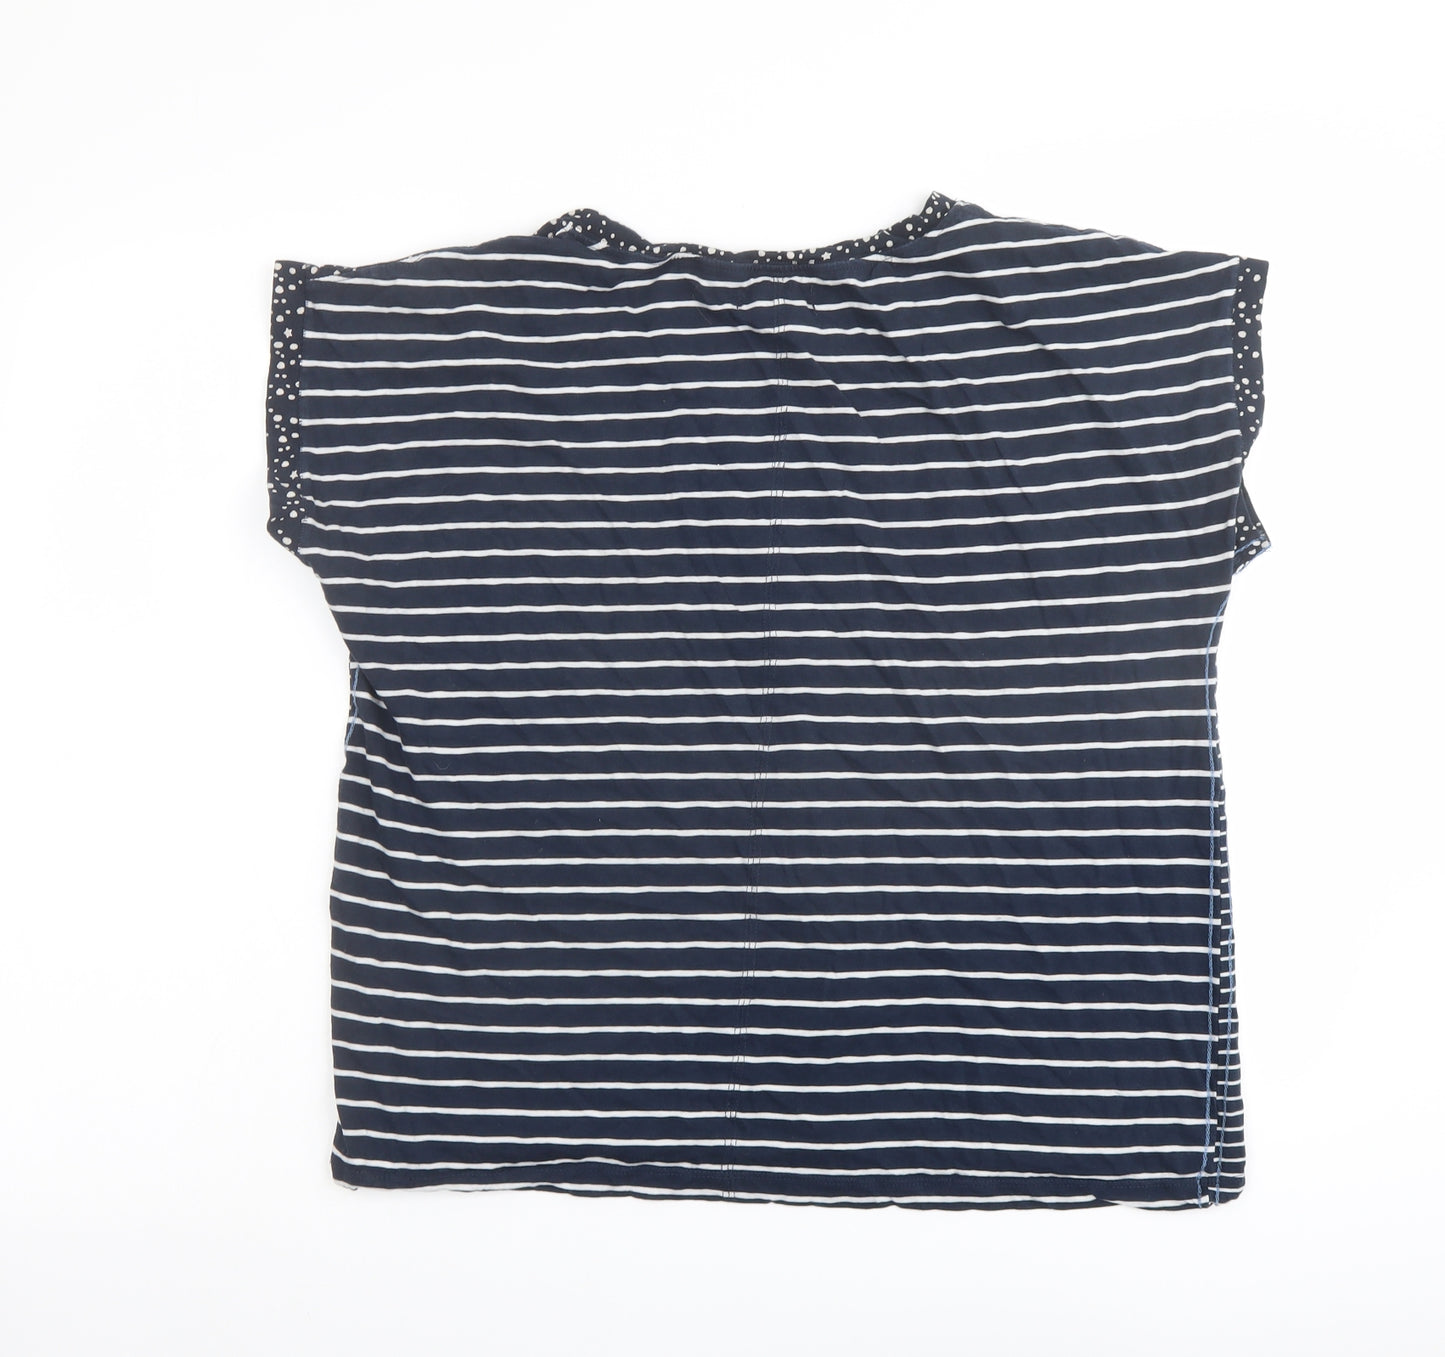 White Stuff Womens Blue Striped Cotton Basic T-Shirt Size 16 V-Neck